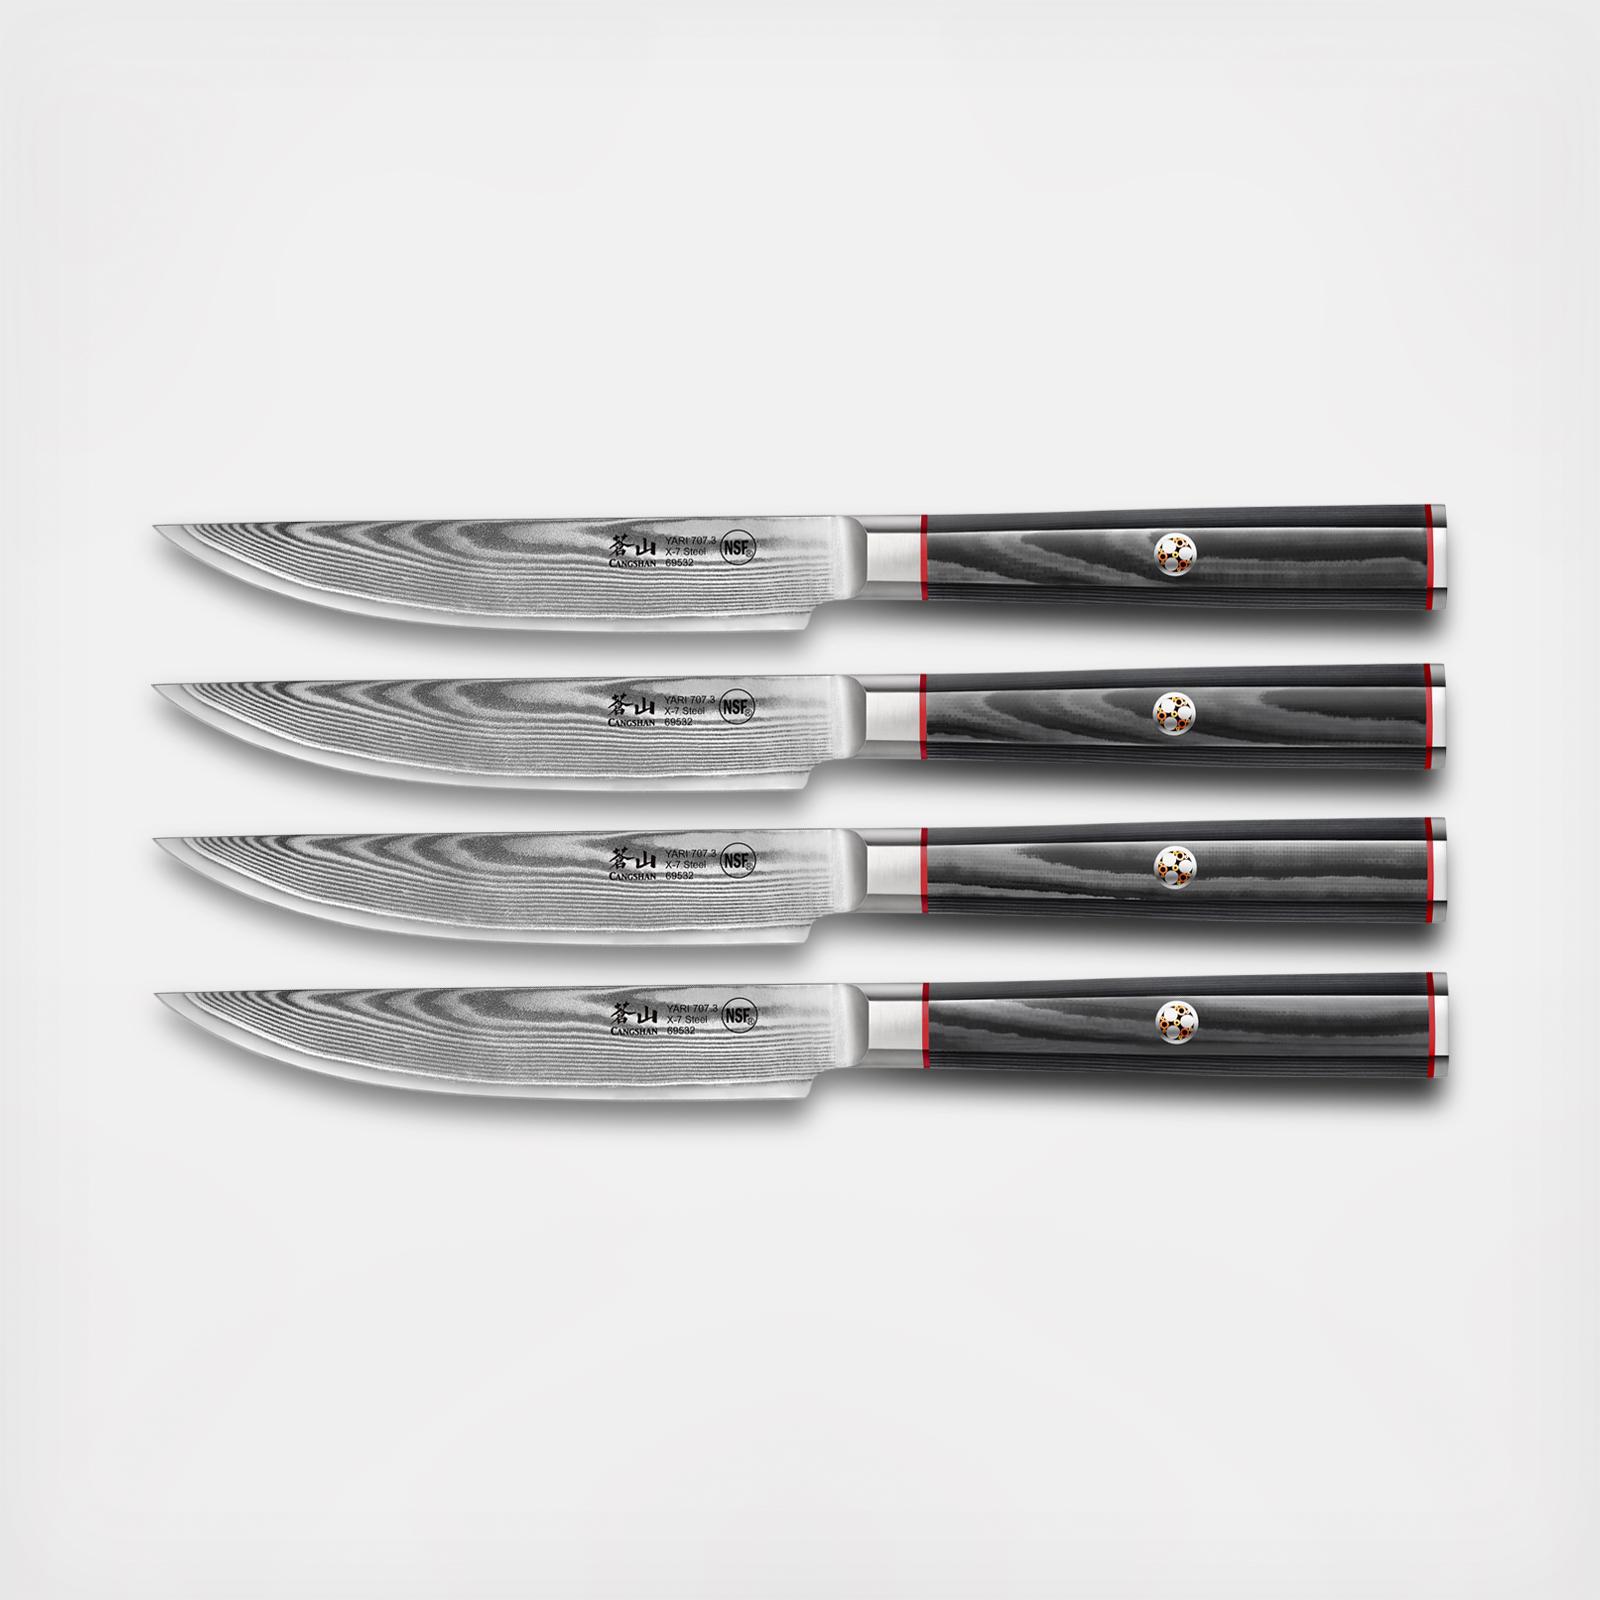 Cangshan Yari Series 8 Chef Knife